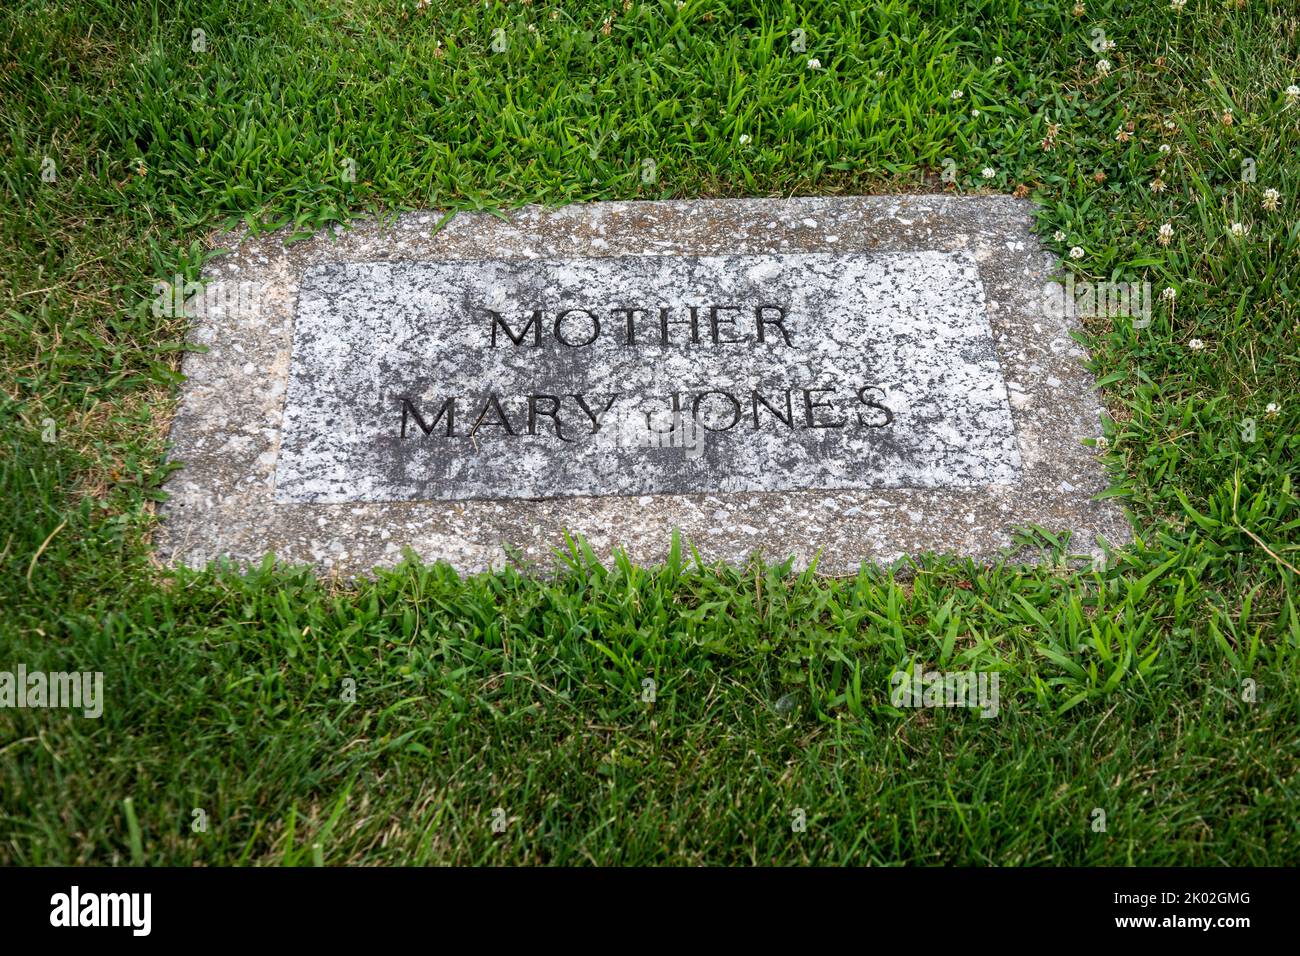 Mt. Olive, Illinois - die Begräbnisstätte legendäre Arbeiterführerin Mary Harris 'Mother' Jones auf dem Union Miners Cemetery. Sie war Aktivistin für die Mine Stockfoto